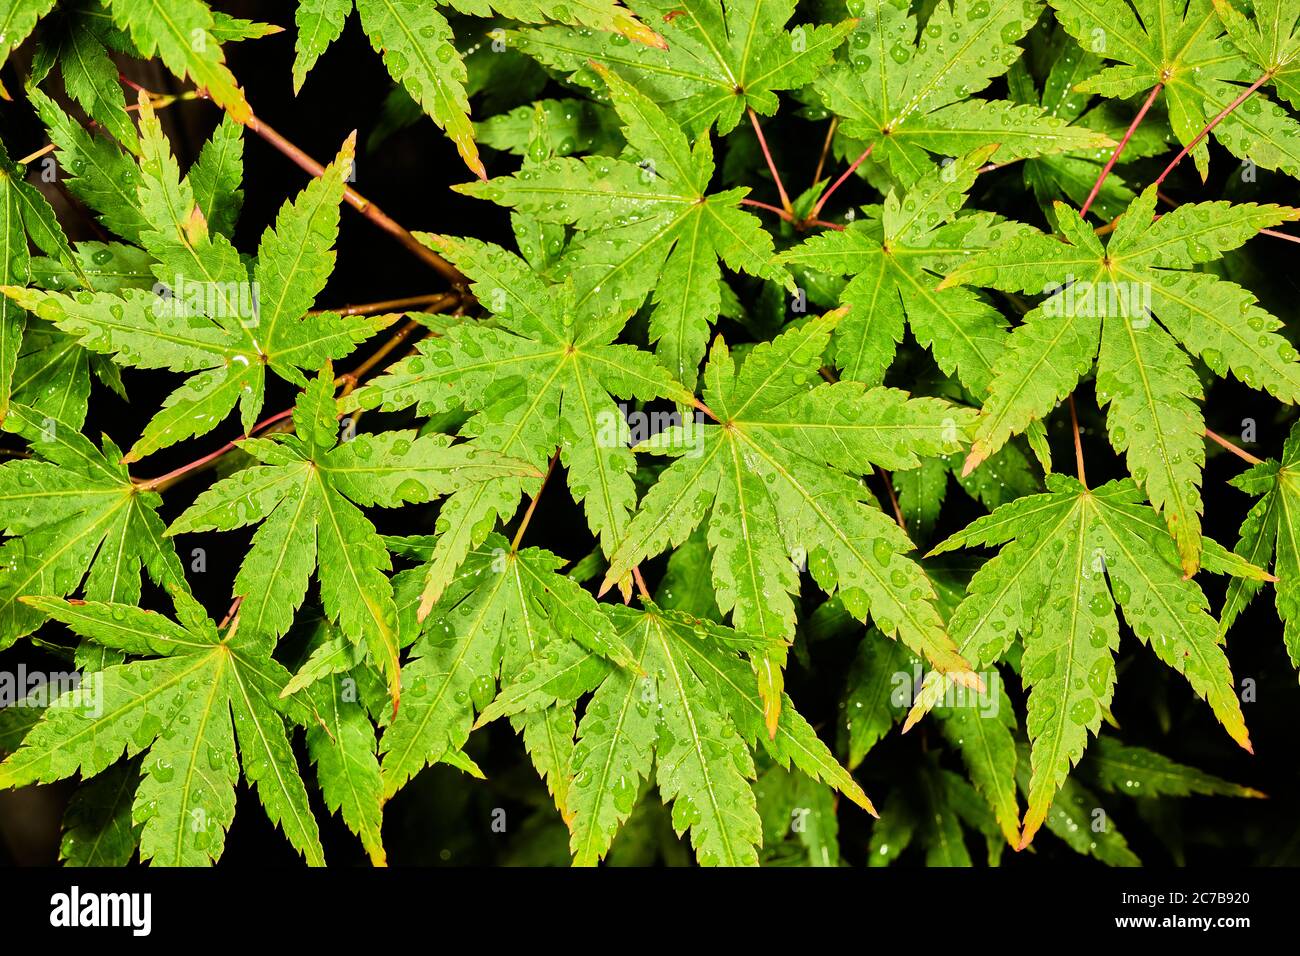 Regen durchnässte grüne Blätter eines acer palmatum (japanischer Ahorn) Strauch. Stockfoto